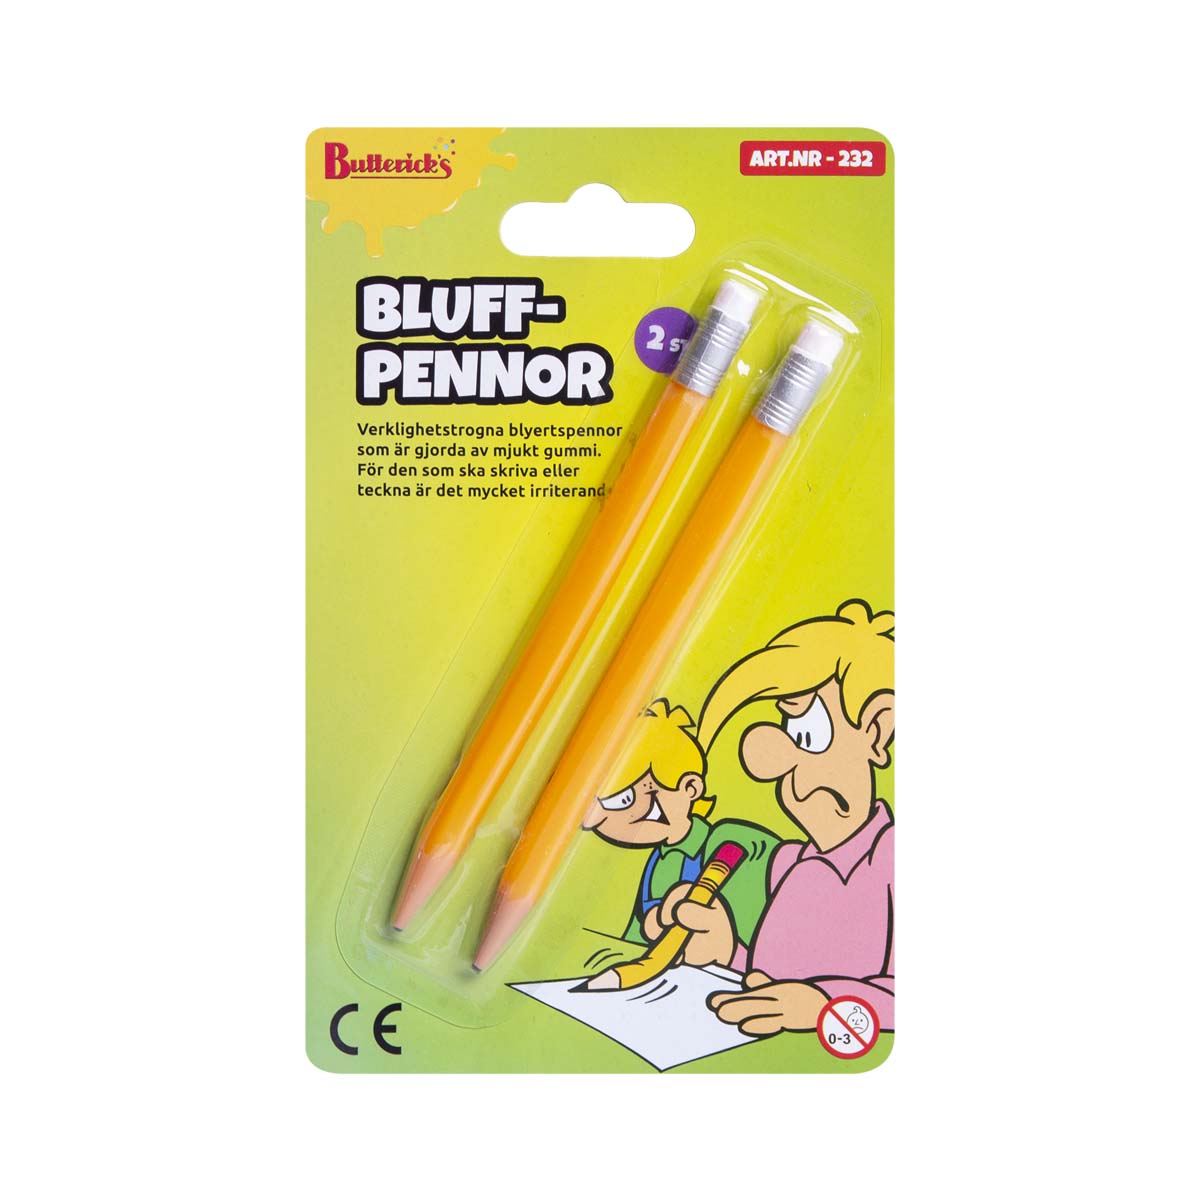 Bluff penna 2st,produktzoombild #1